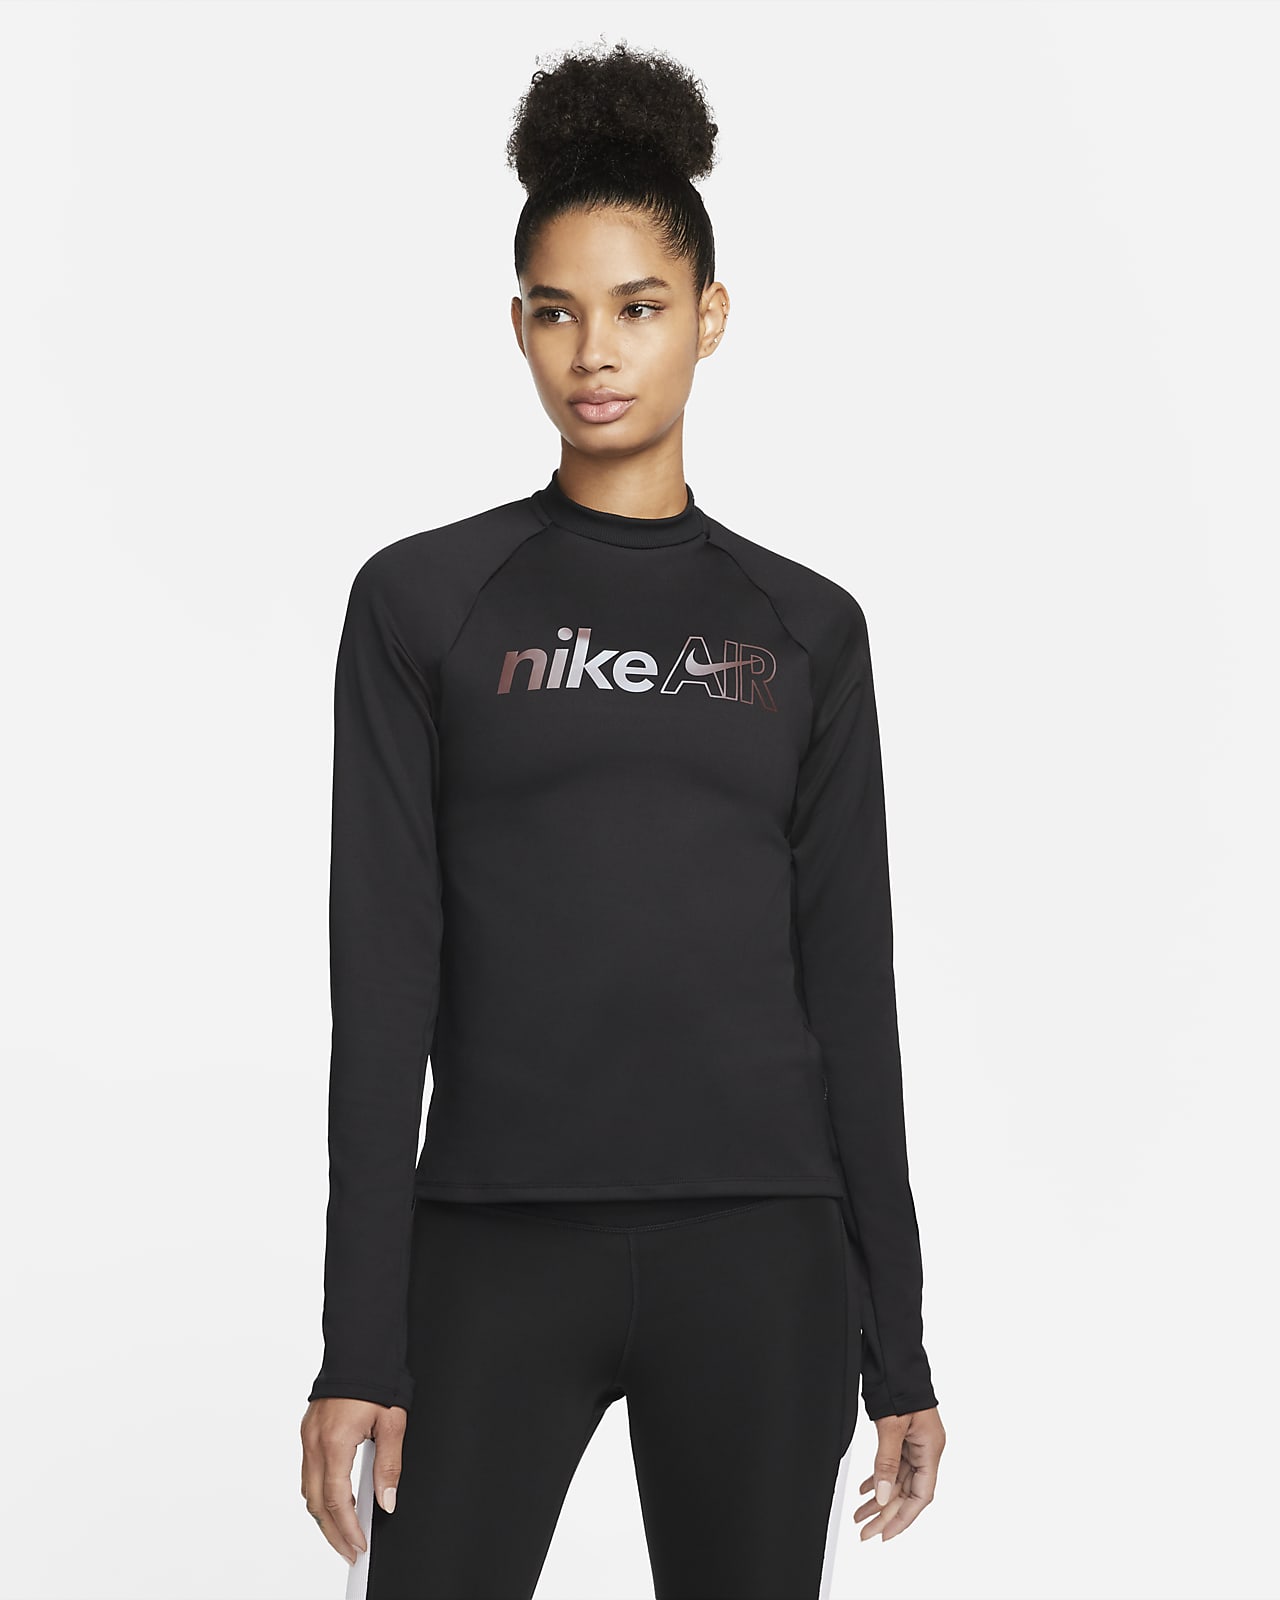 Nike Air Lauf-Mittelschicht für Damen